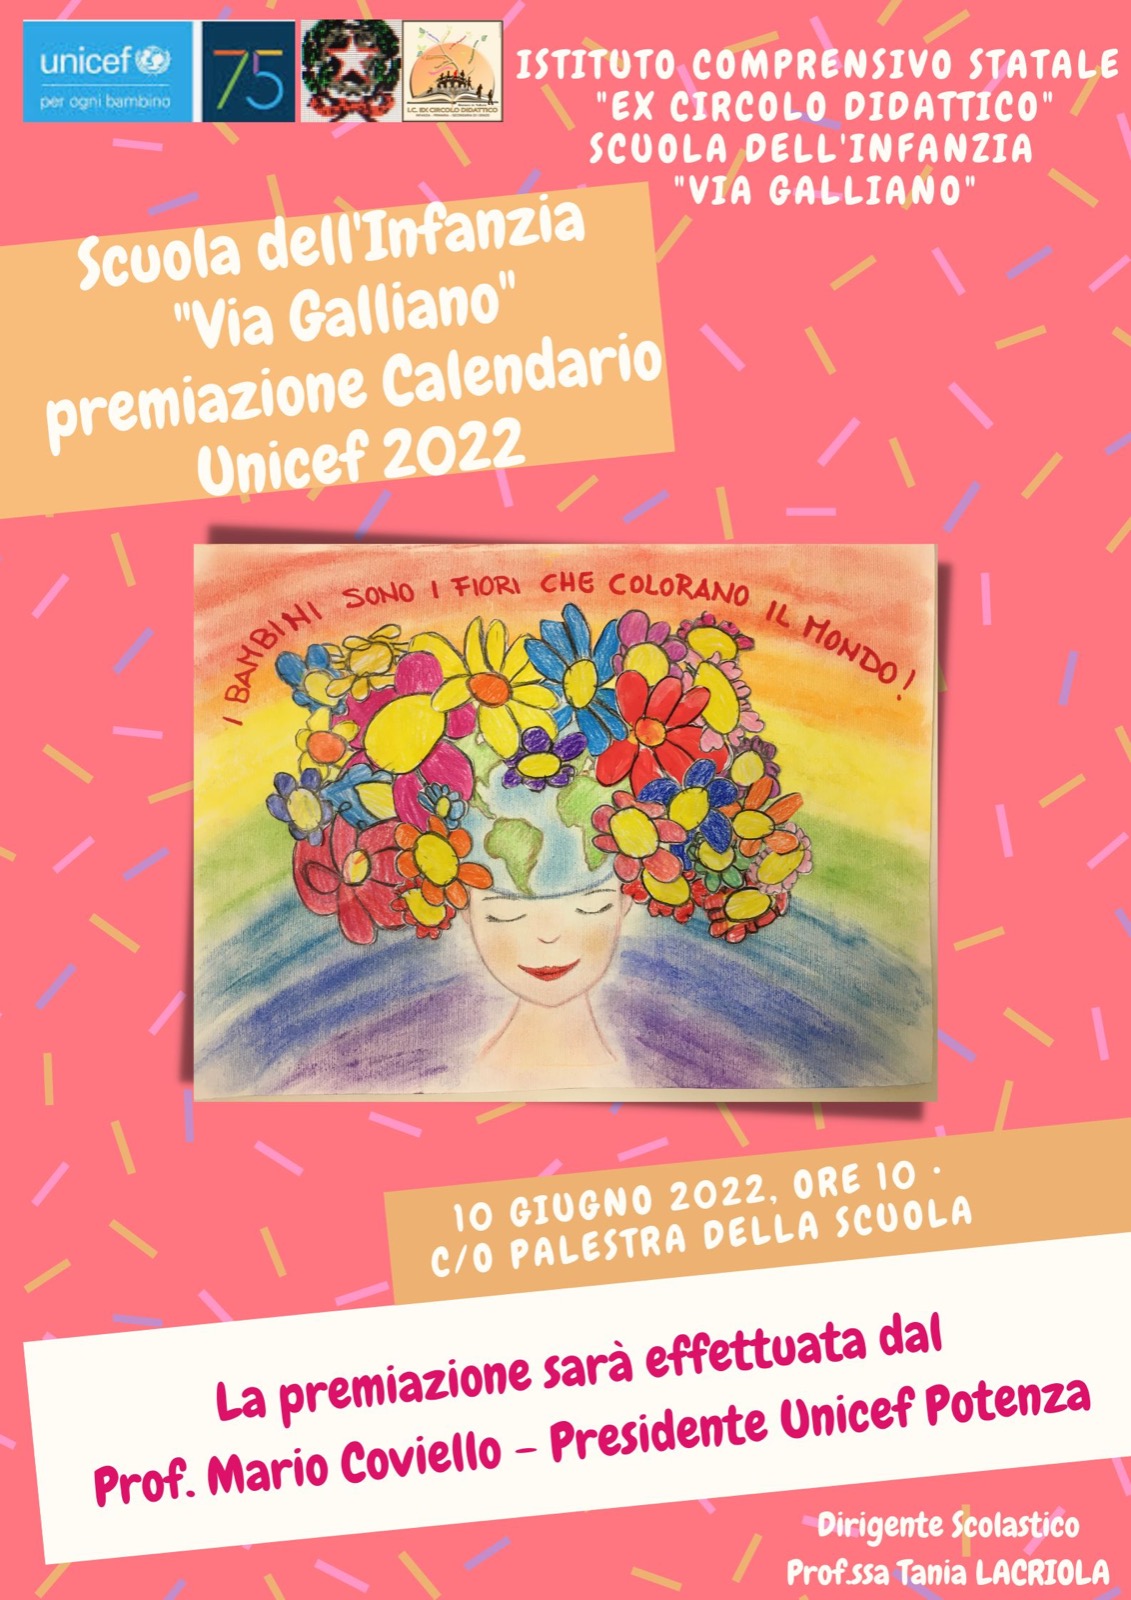 Premiazione calendario Unicef 2022